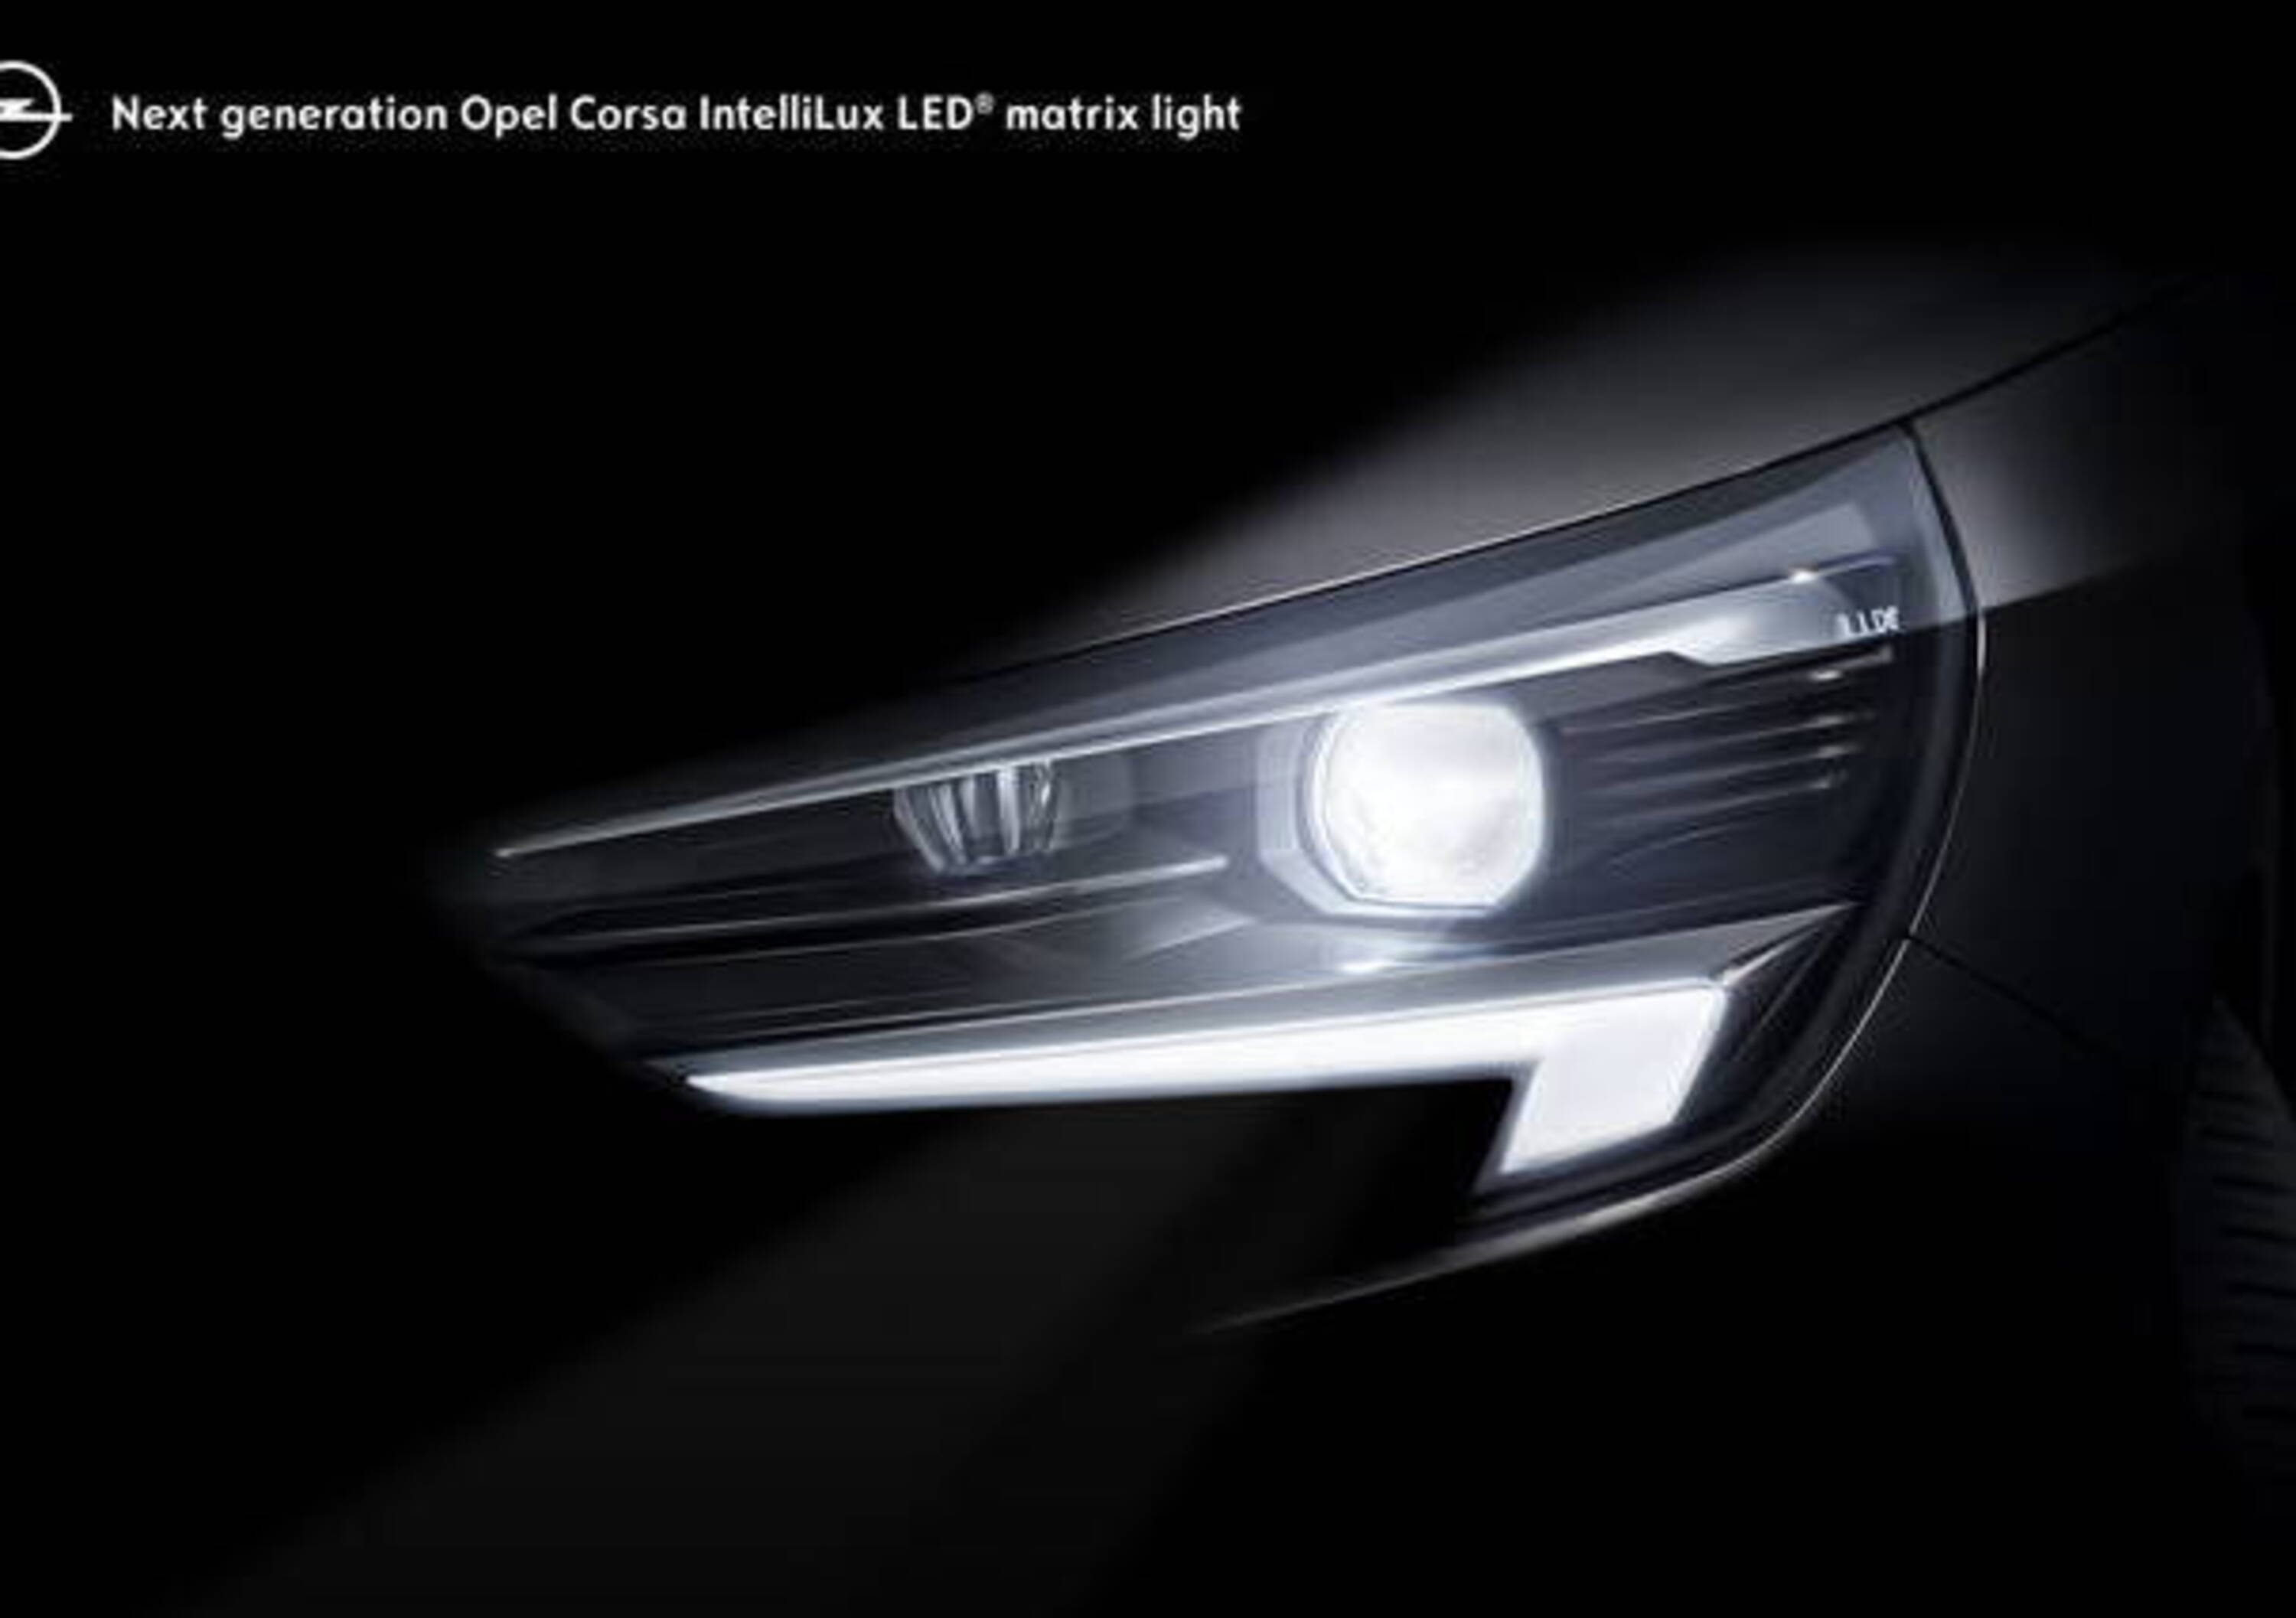 Opel Corsa, fari LED Matrix per la nuova generazione - News 